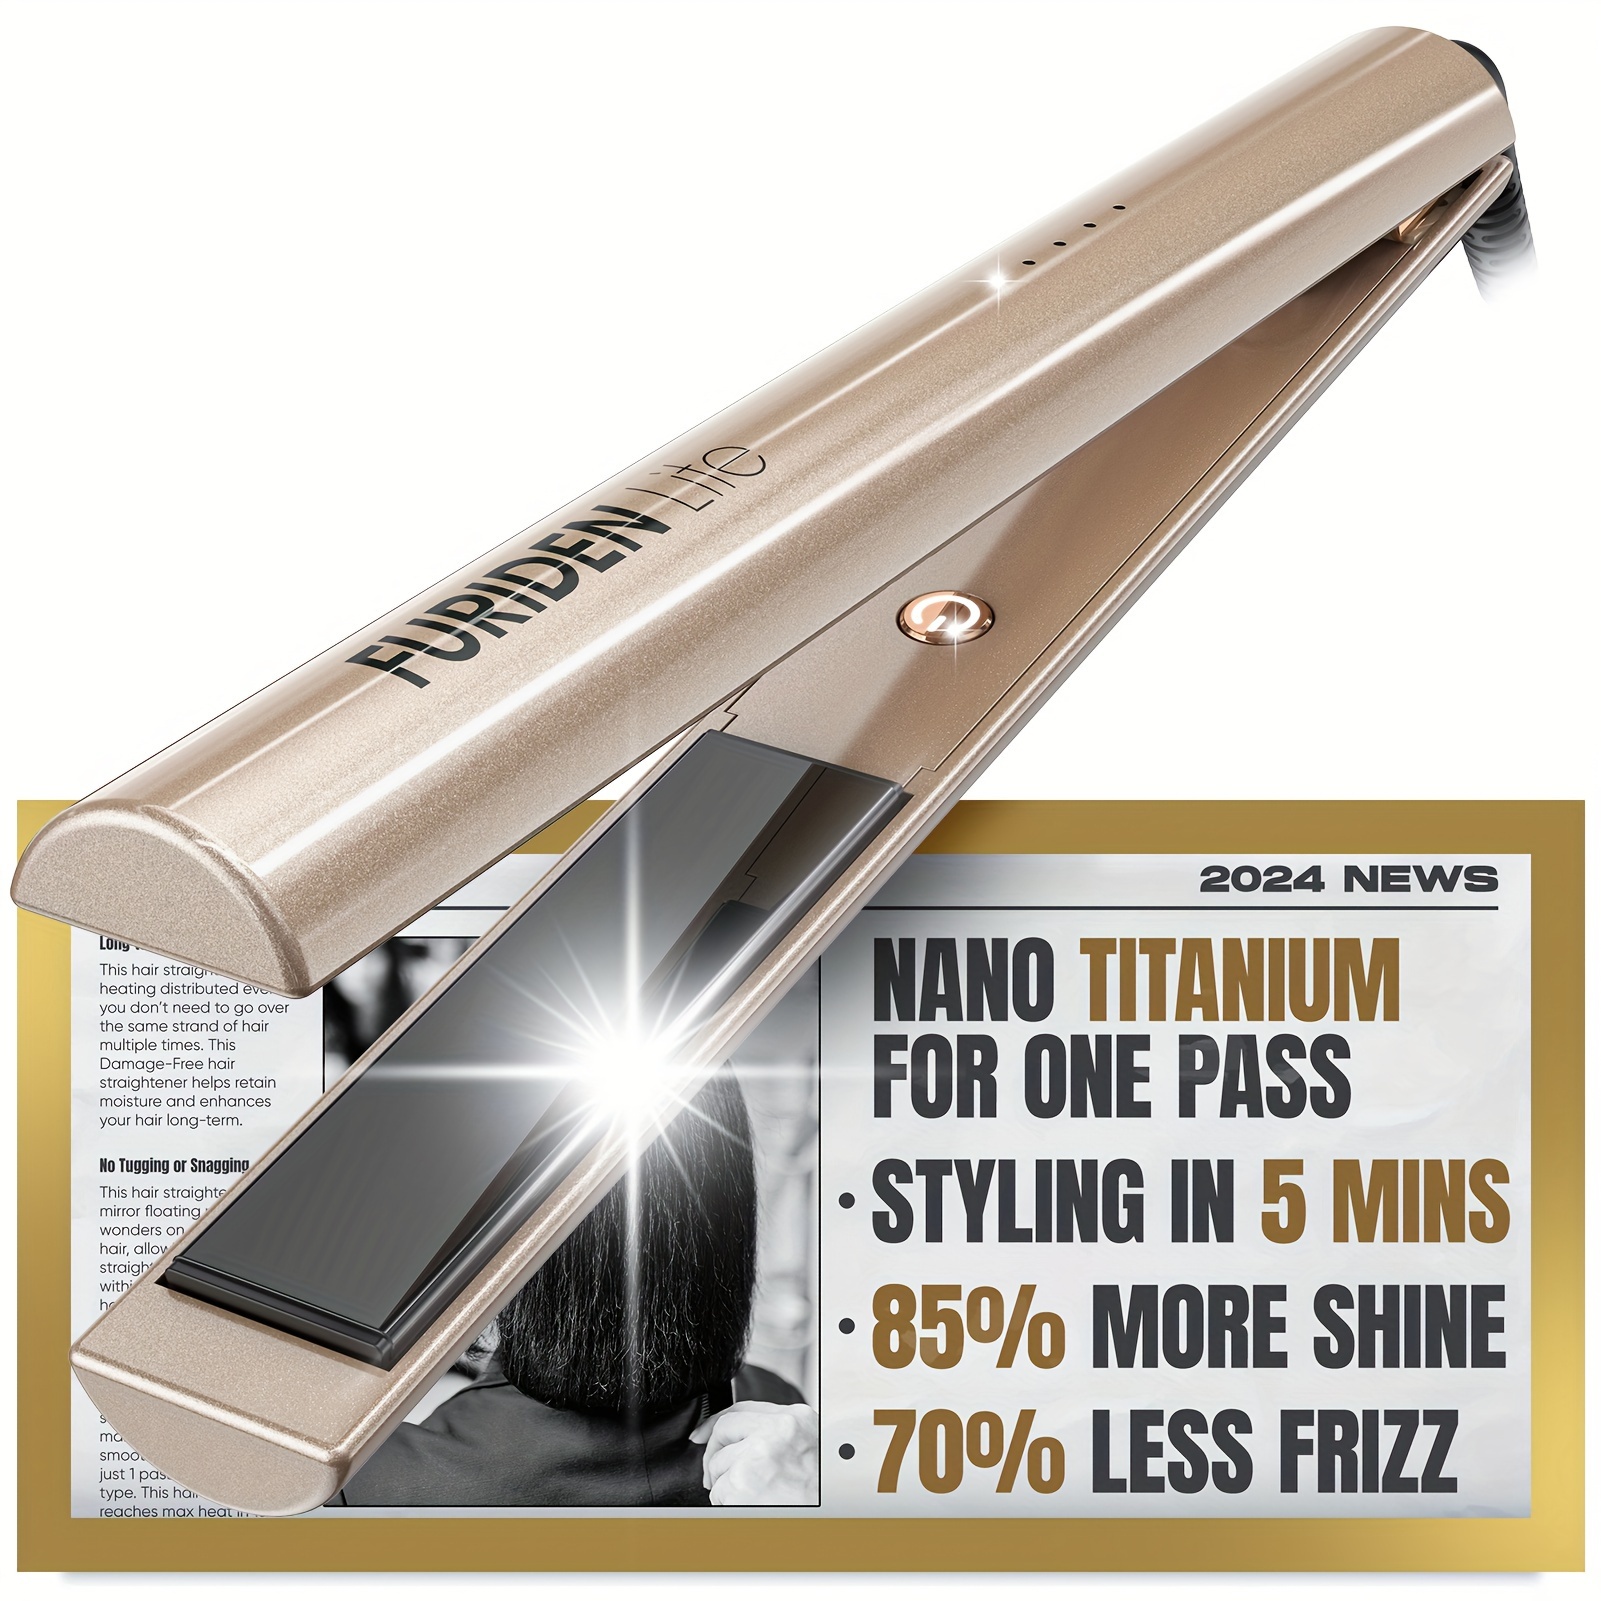 

Furiden Nano Titanium Flat Iron - To Achieve A Silky, Shiny, Sleek Look | Add 85% Of Shine | 70% Of Frizz